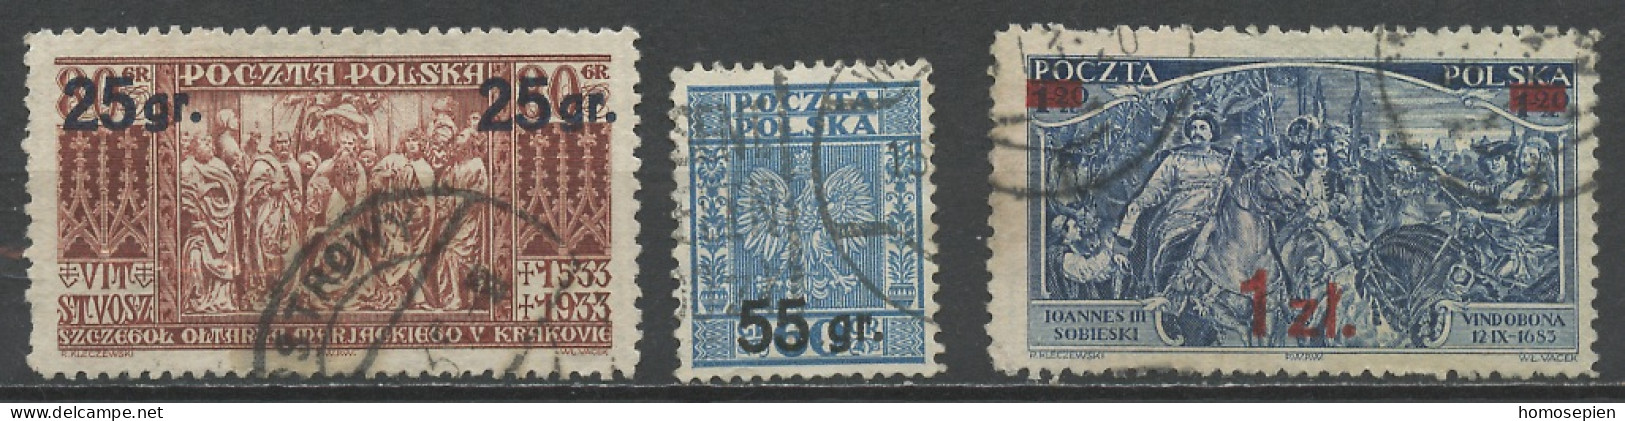 Pologne - Poland - Polen 1934 Y&T N°371 à 373 - Michel N°289 à 291 (o) - Sujets Divers Surchargés - Used Stamps